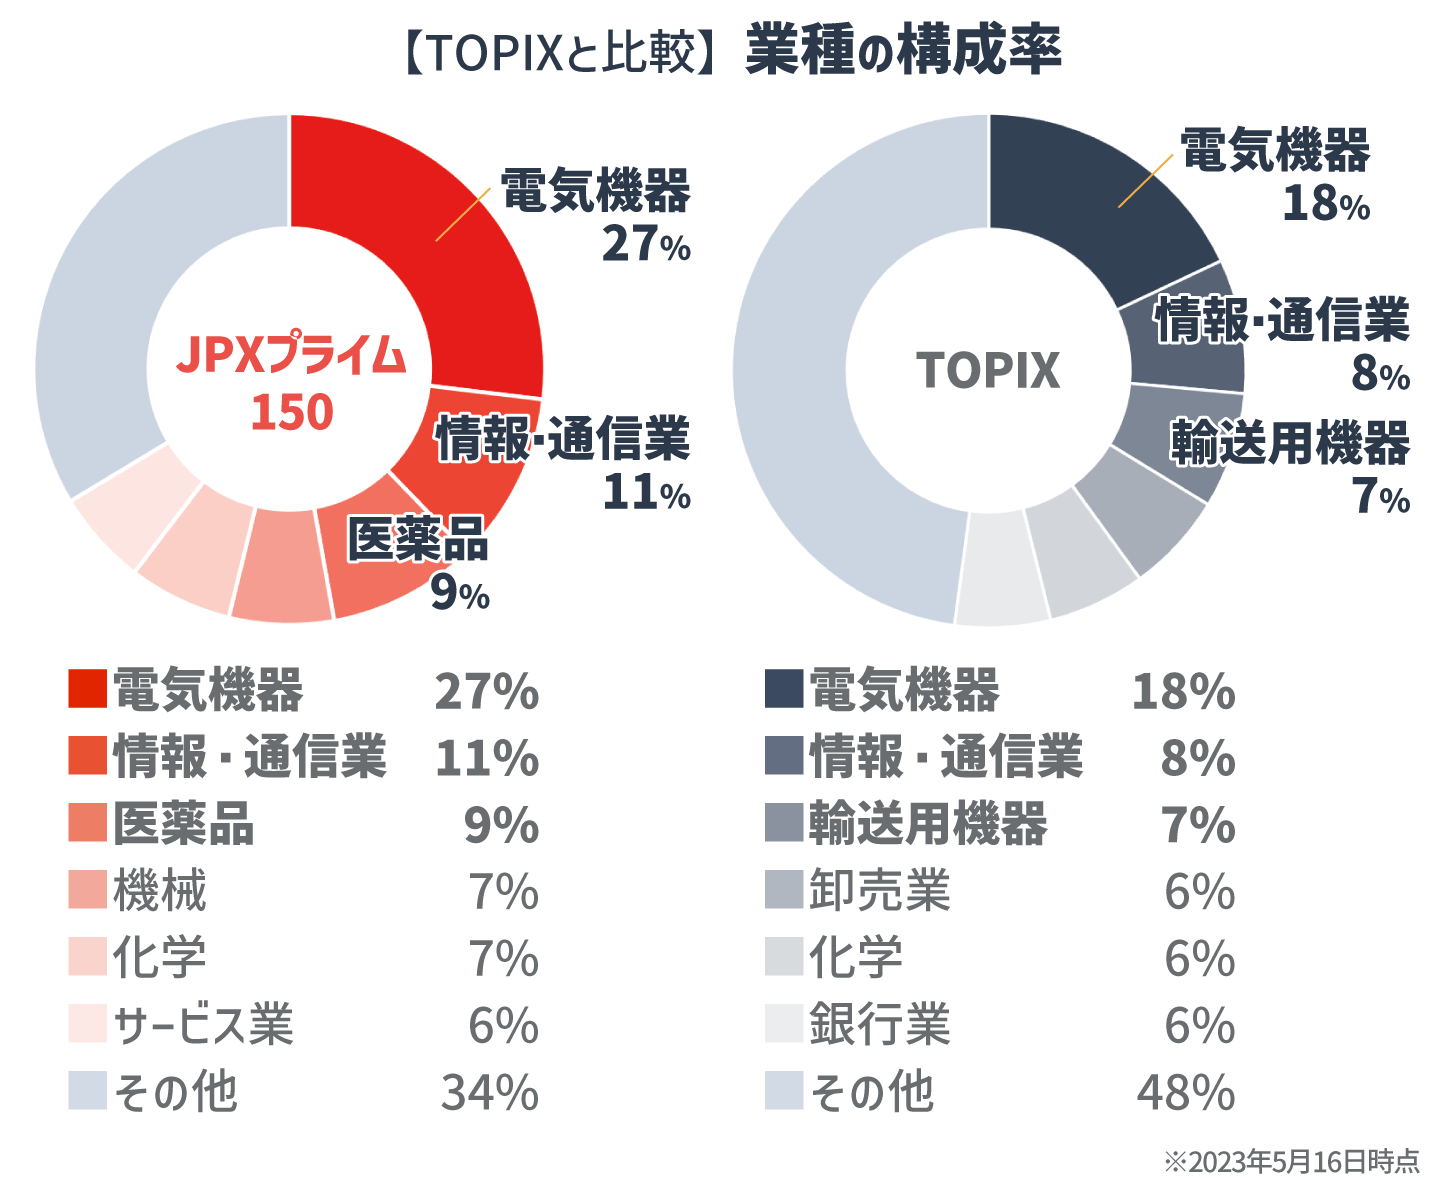 【TOPIXと比較】業種の構成率